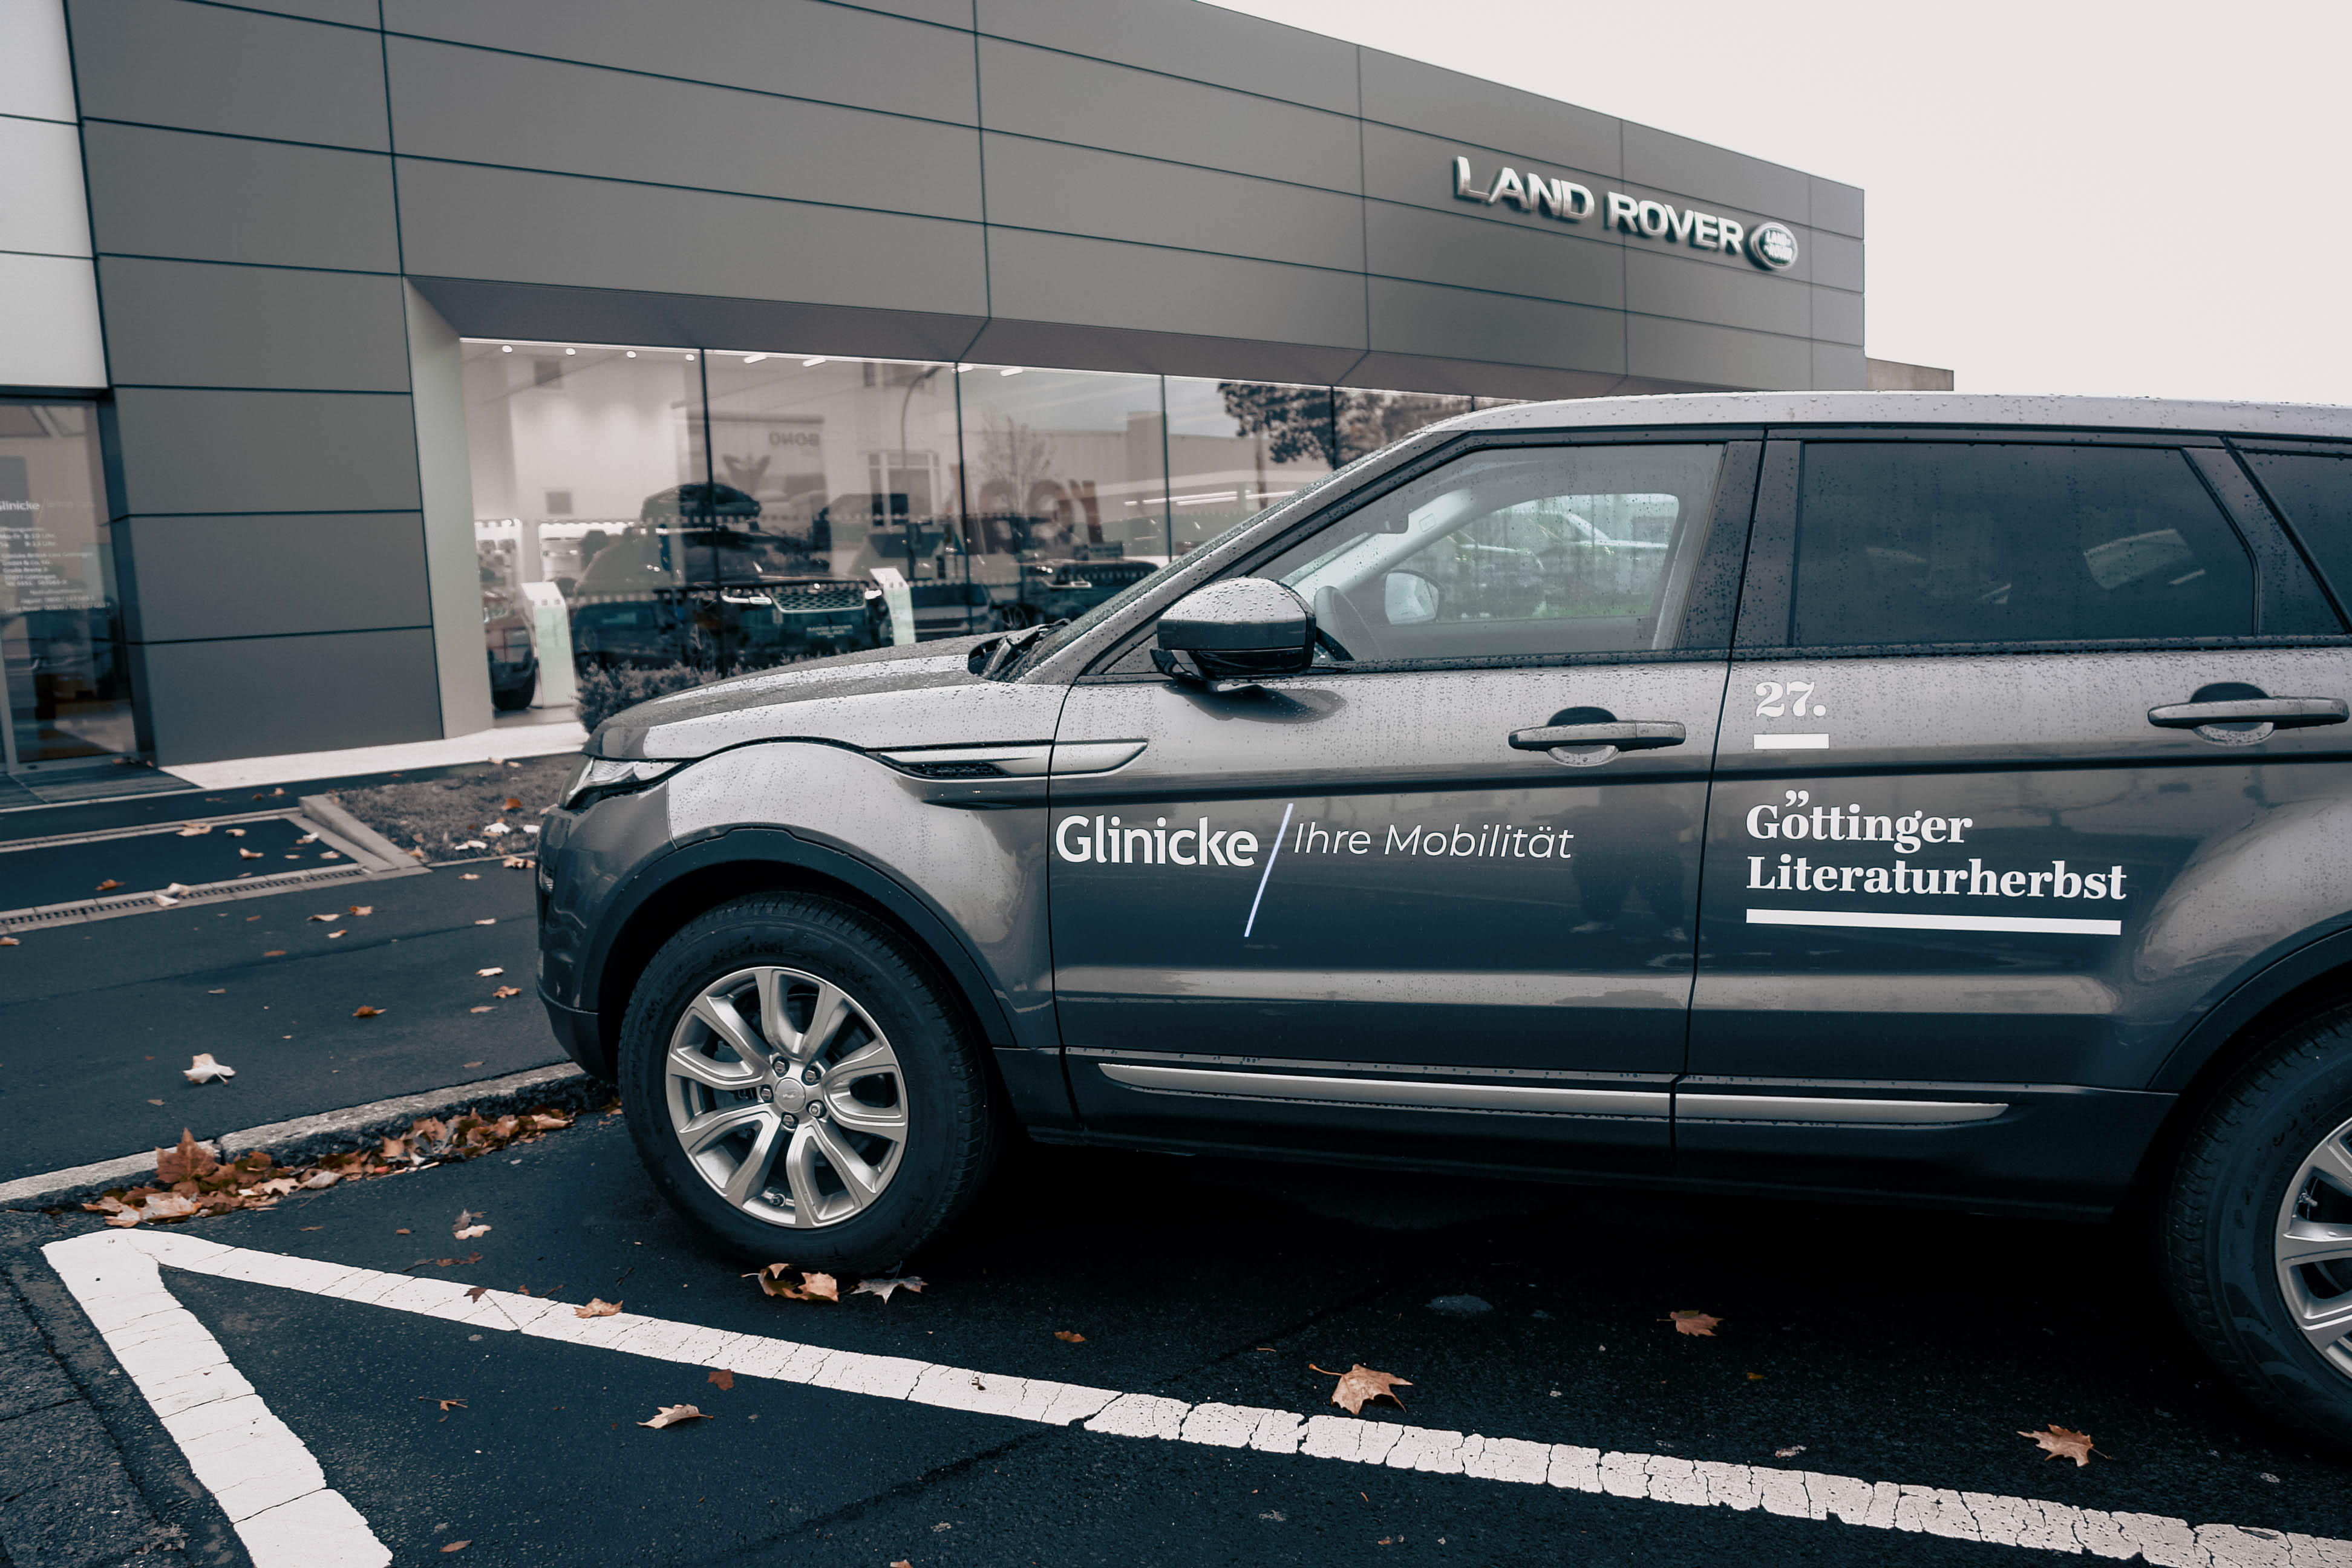 Bild 2 Land Rover Autohaus | Glinicke | British Cars in Göttingen